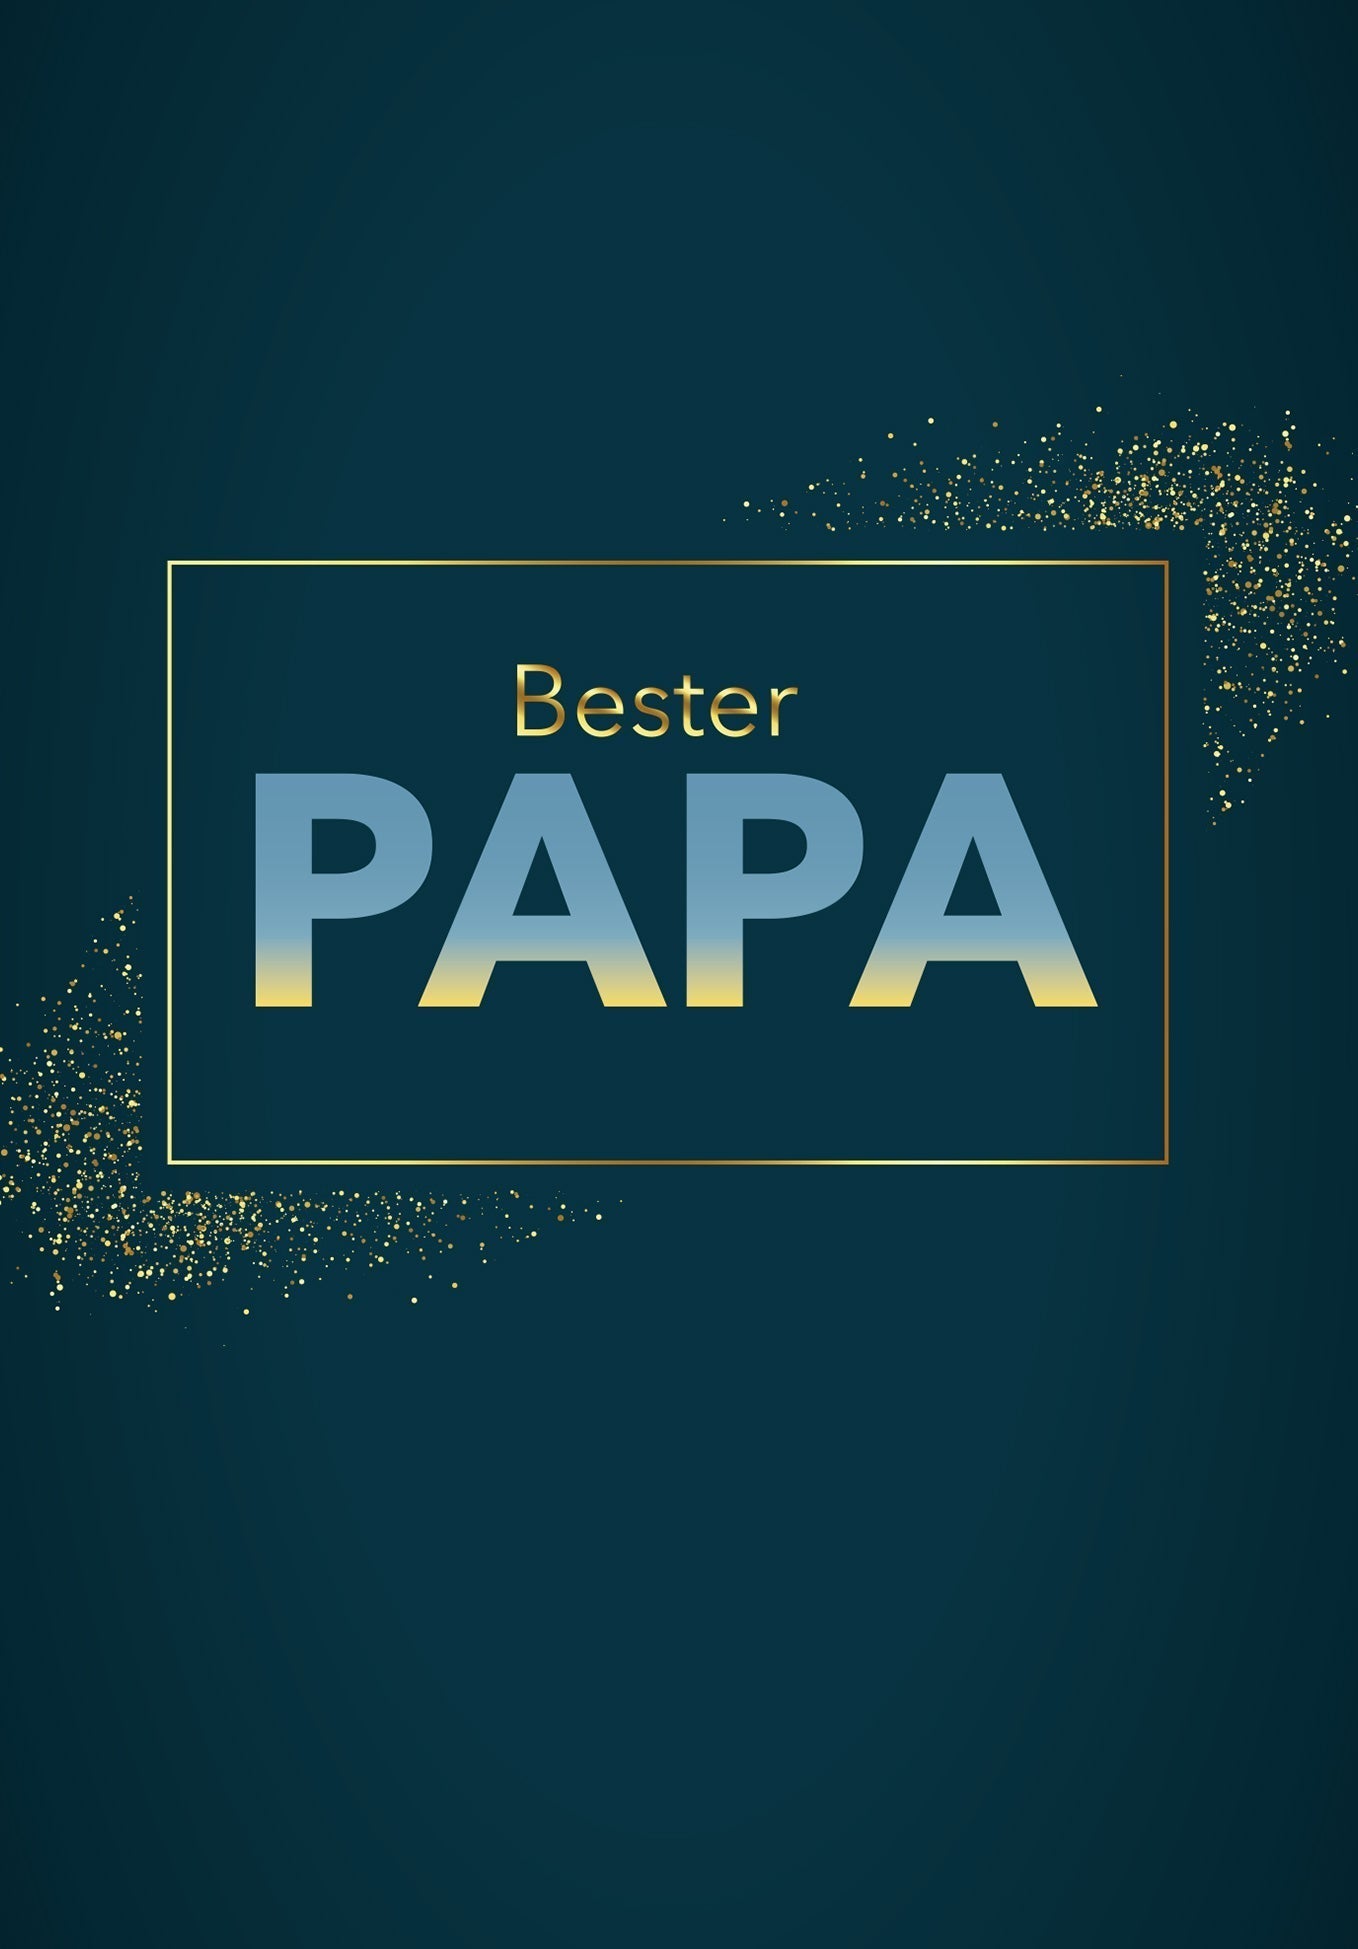 Bester Papa - Blau (Gutscheinwert)